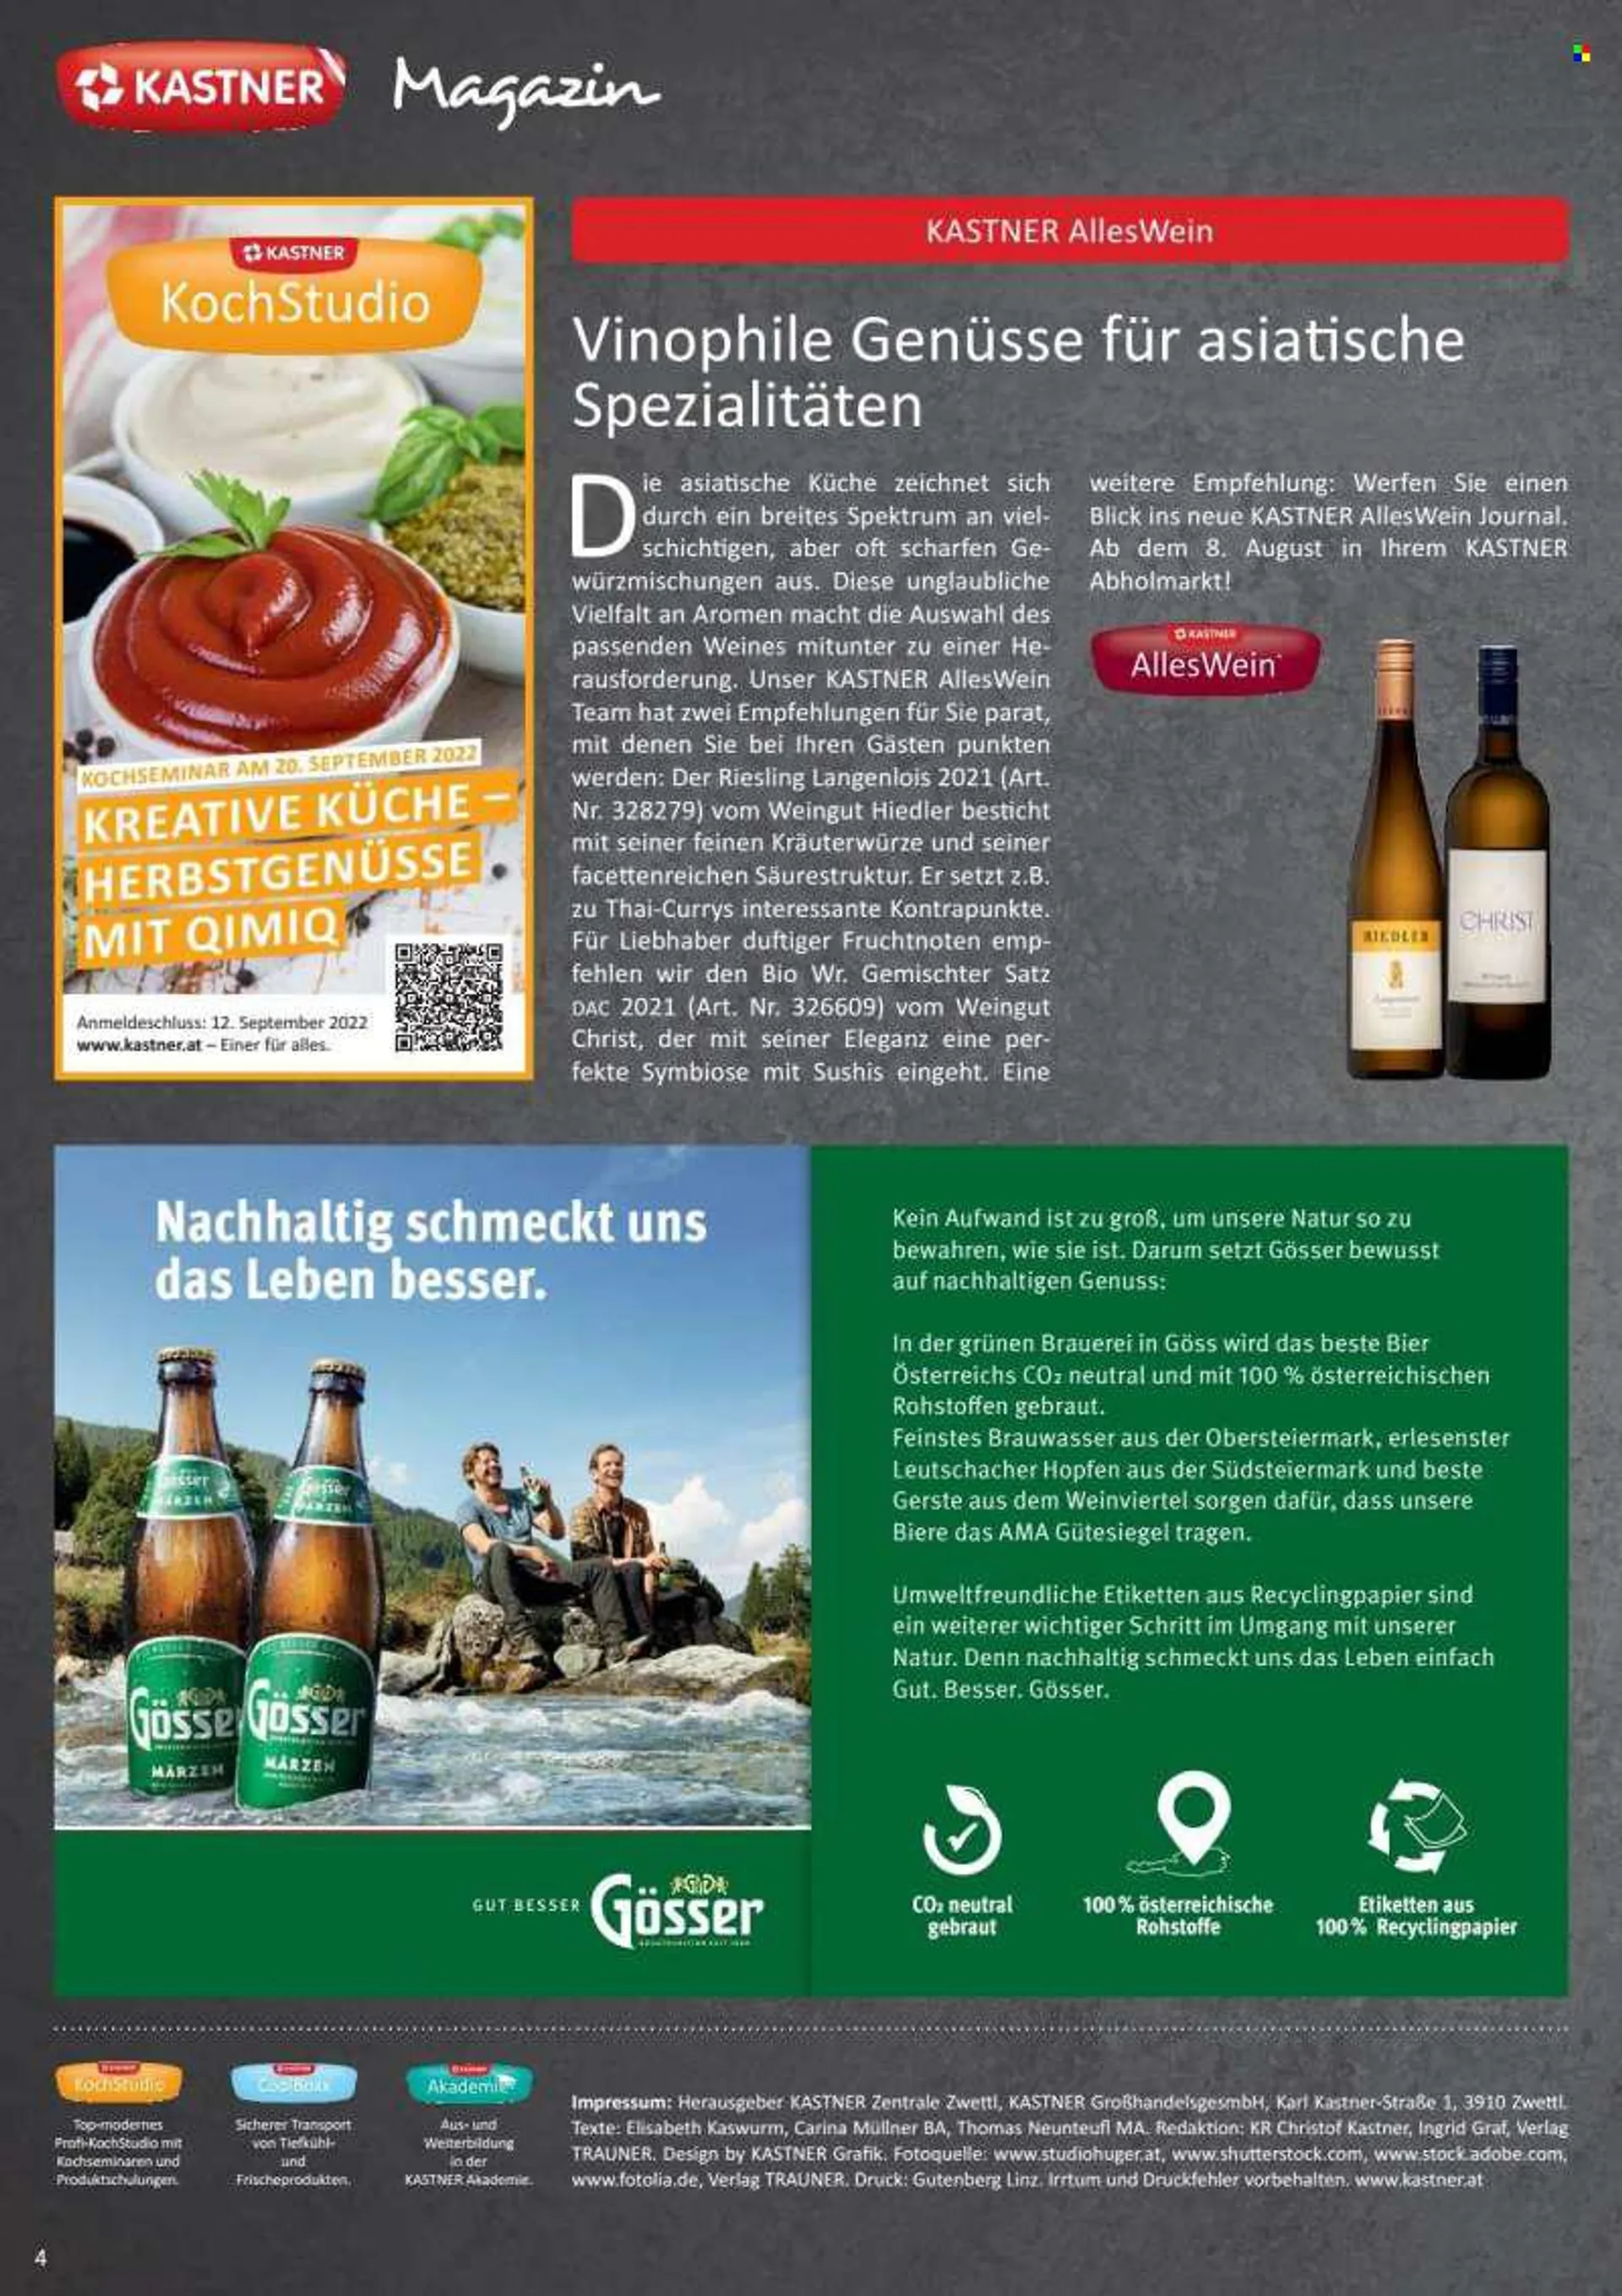 Angebote KASTNER - Verkaufsprodukte - QimiQ, Würzmischung, Wein, Riesling, Alkohol, Gemischter Satz, Bier, Gösser. Seite 4.